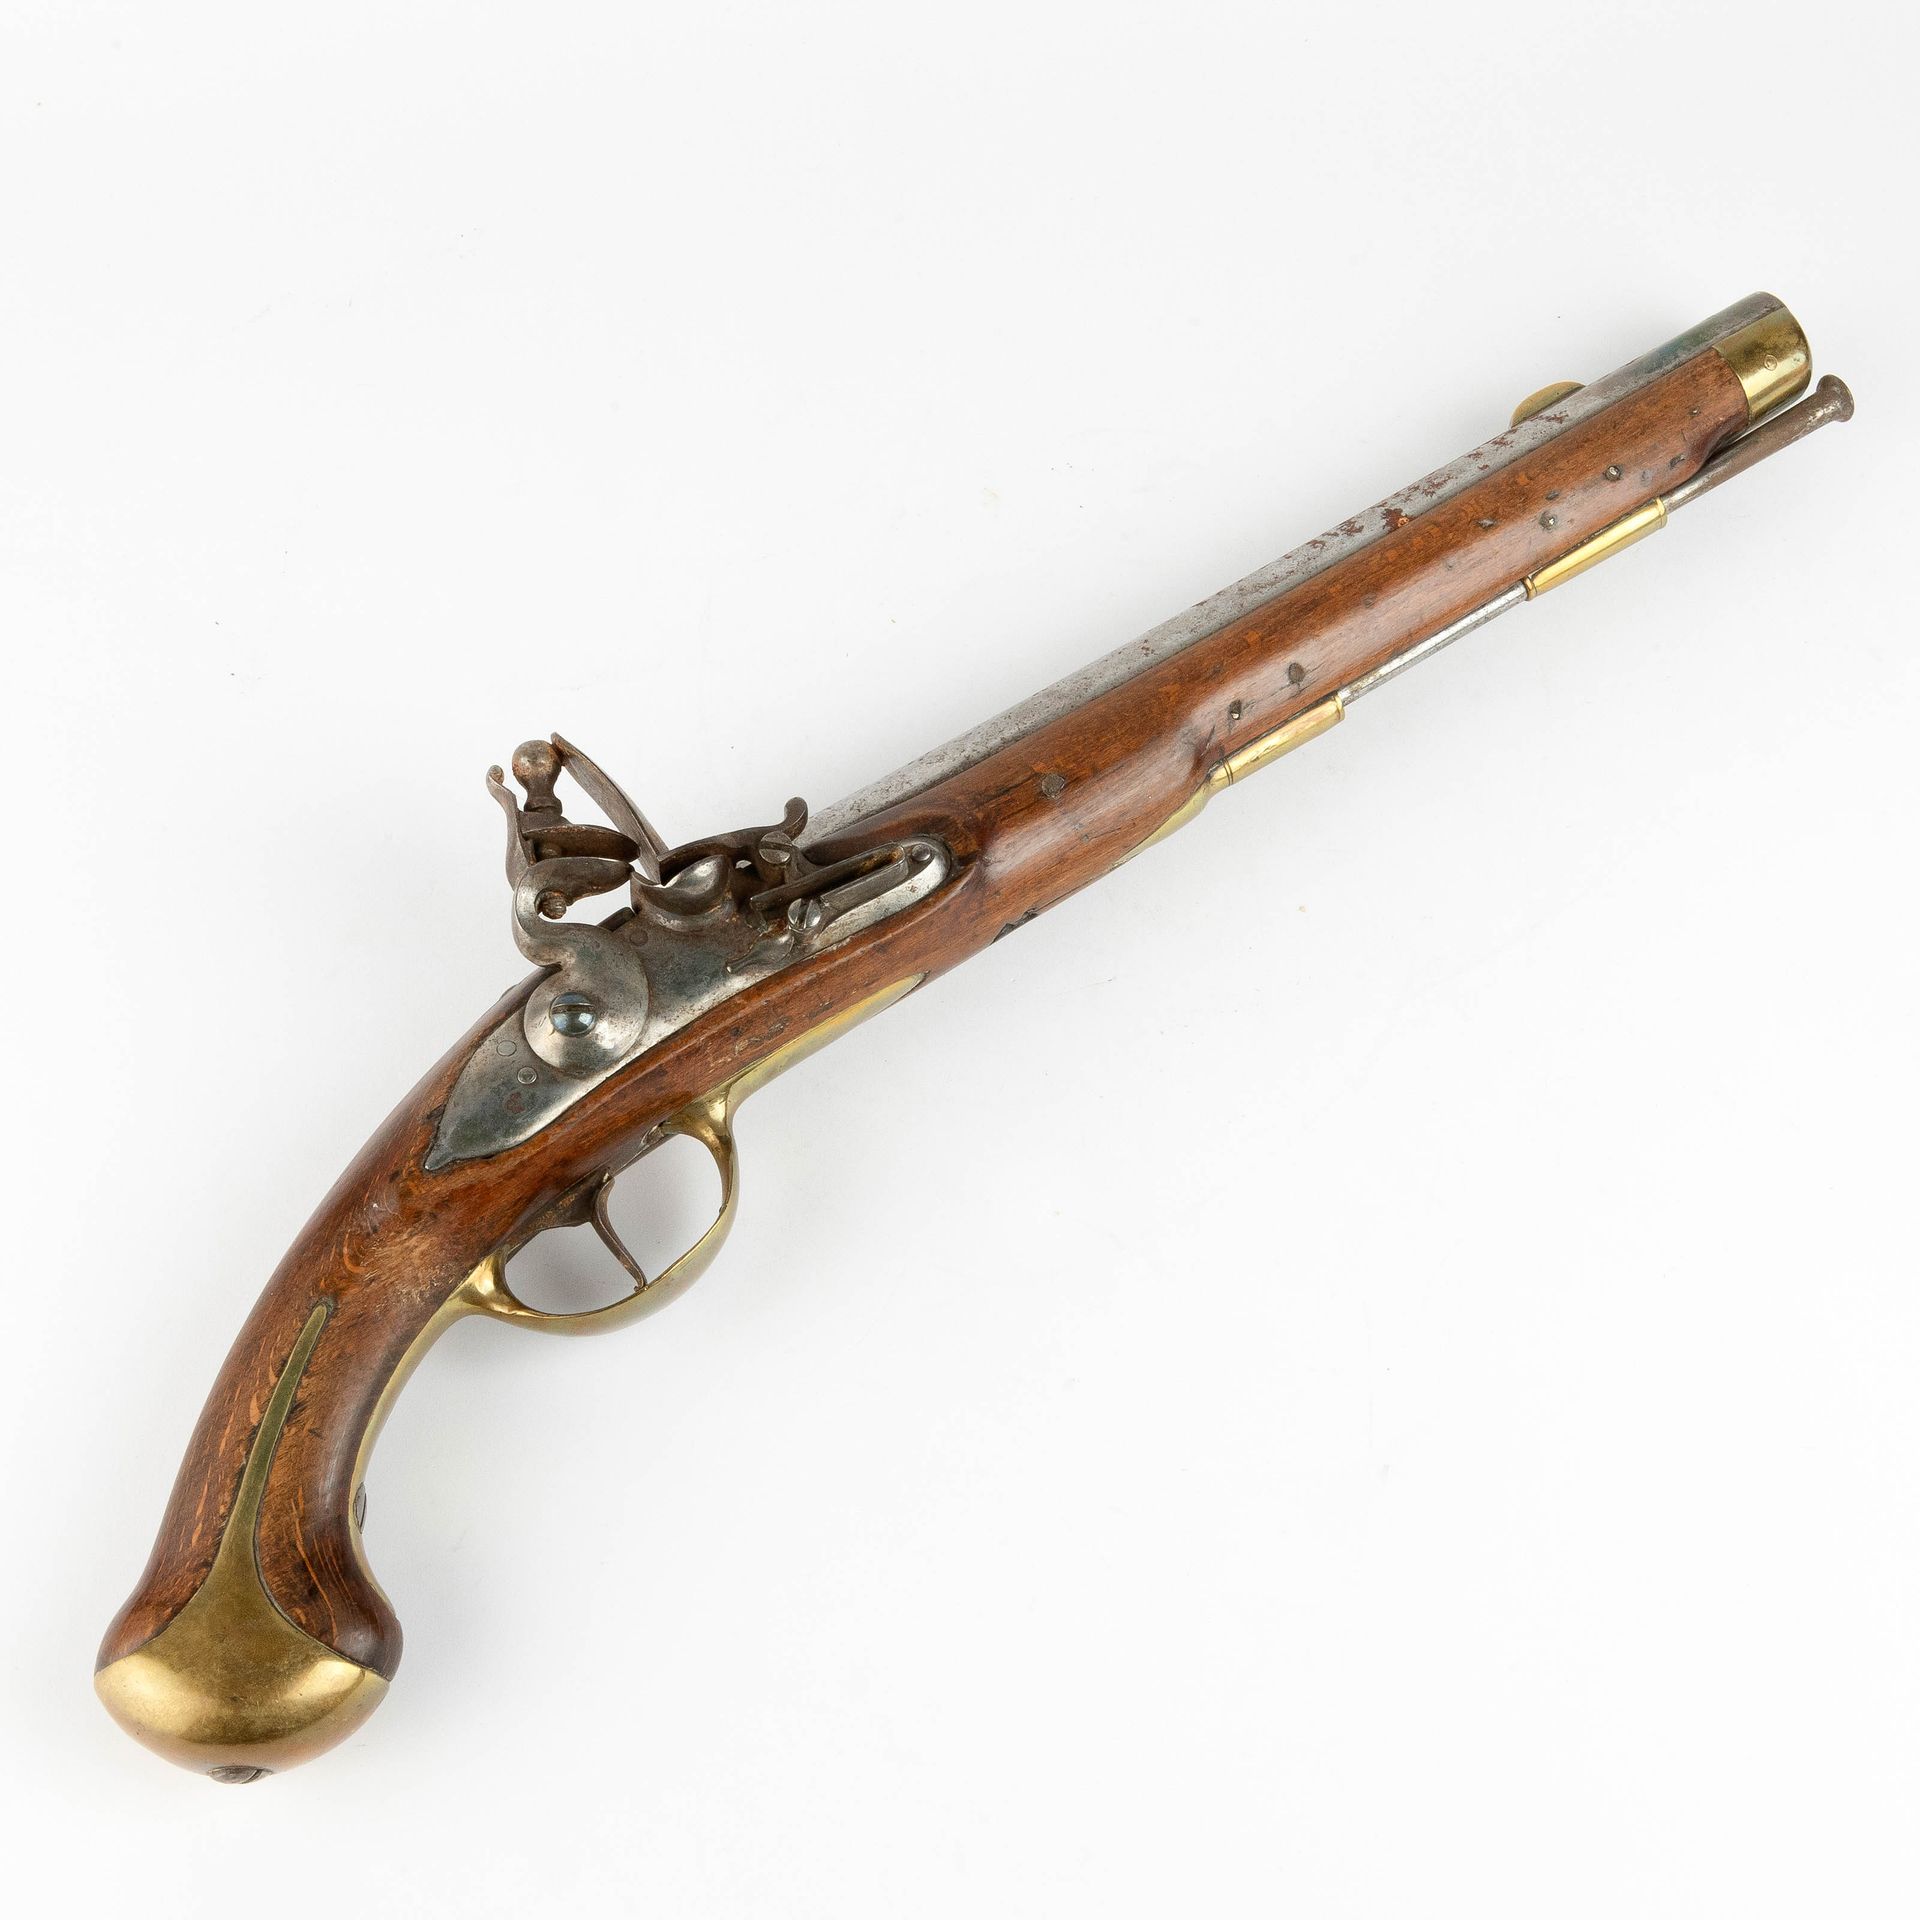 Pistolet à silex. 19ème siècle. Flint pistol. 19th century.
Wood, iron and brass&hellip;